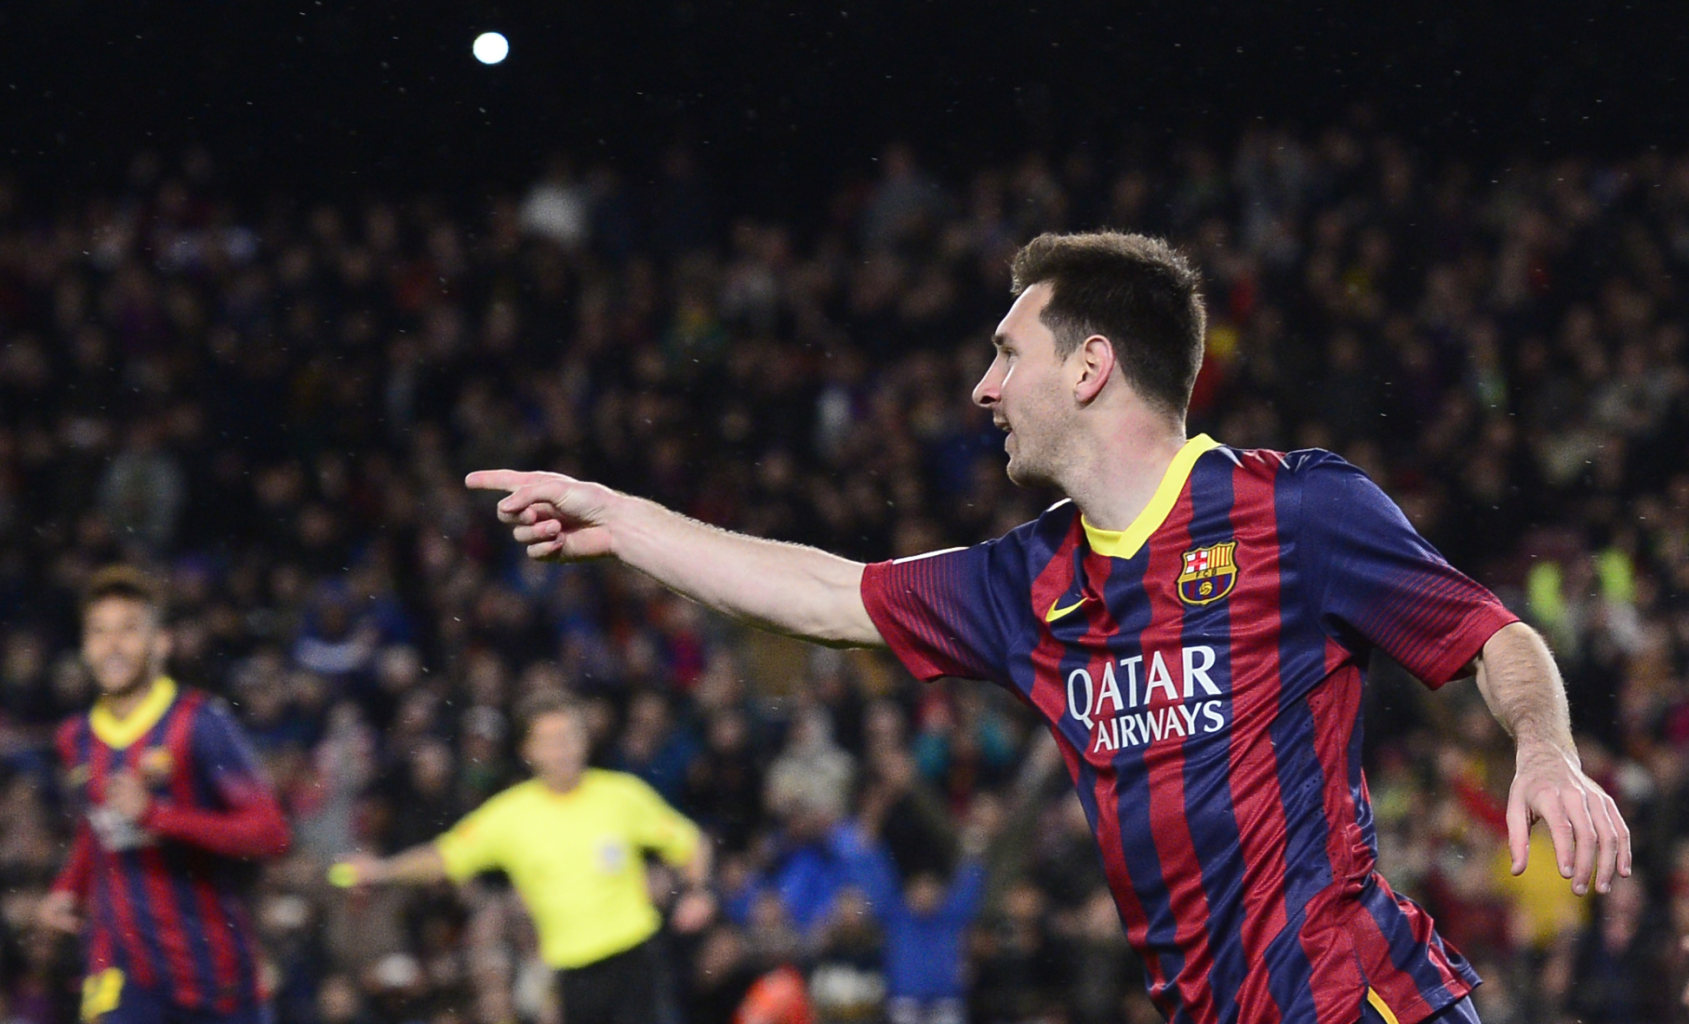 Lionel Messi thanking Andrés Iniesta for his assist in Barcelona 3-0 Celta de Vigo